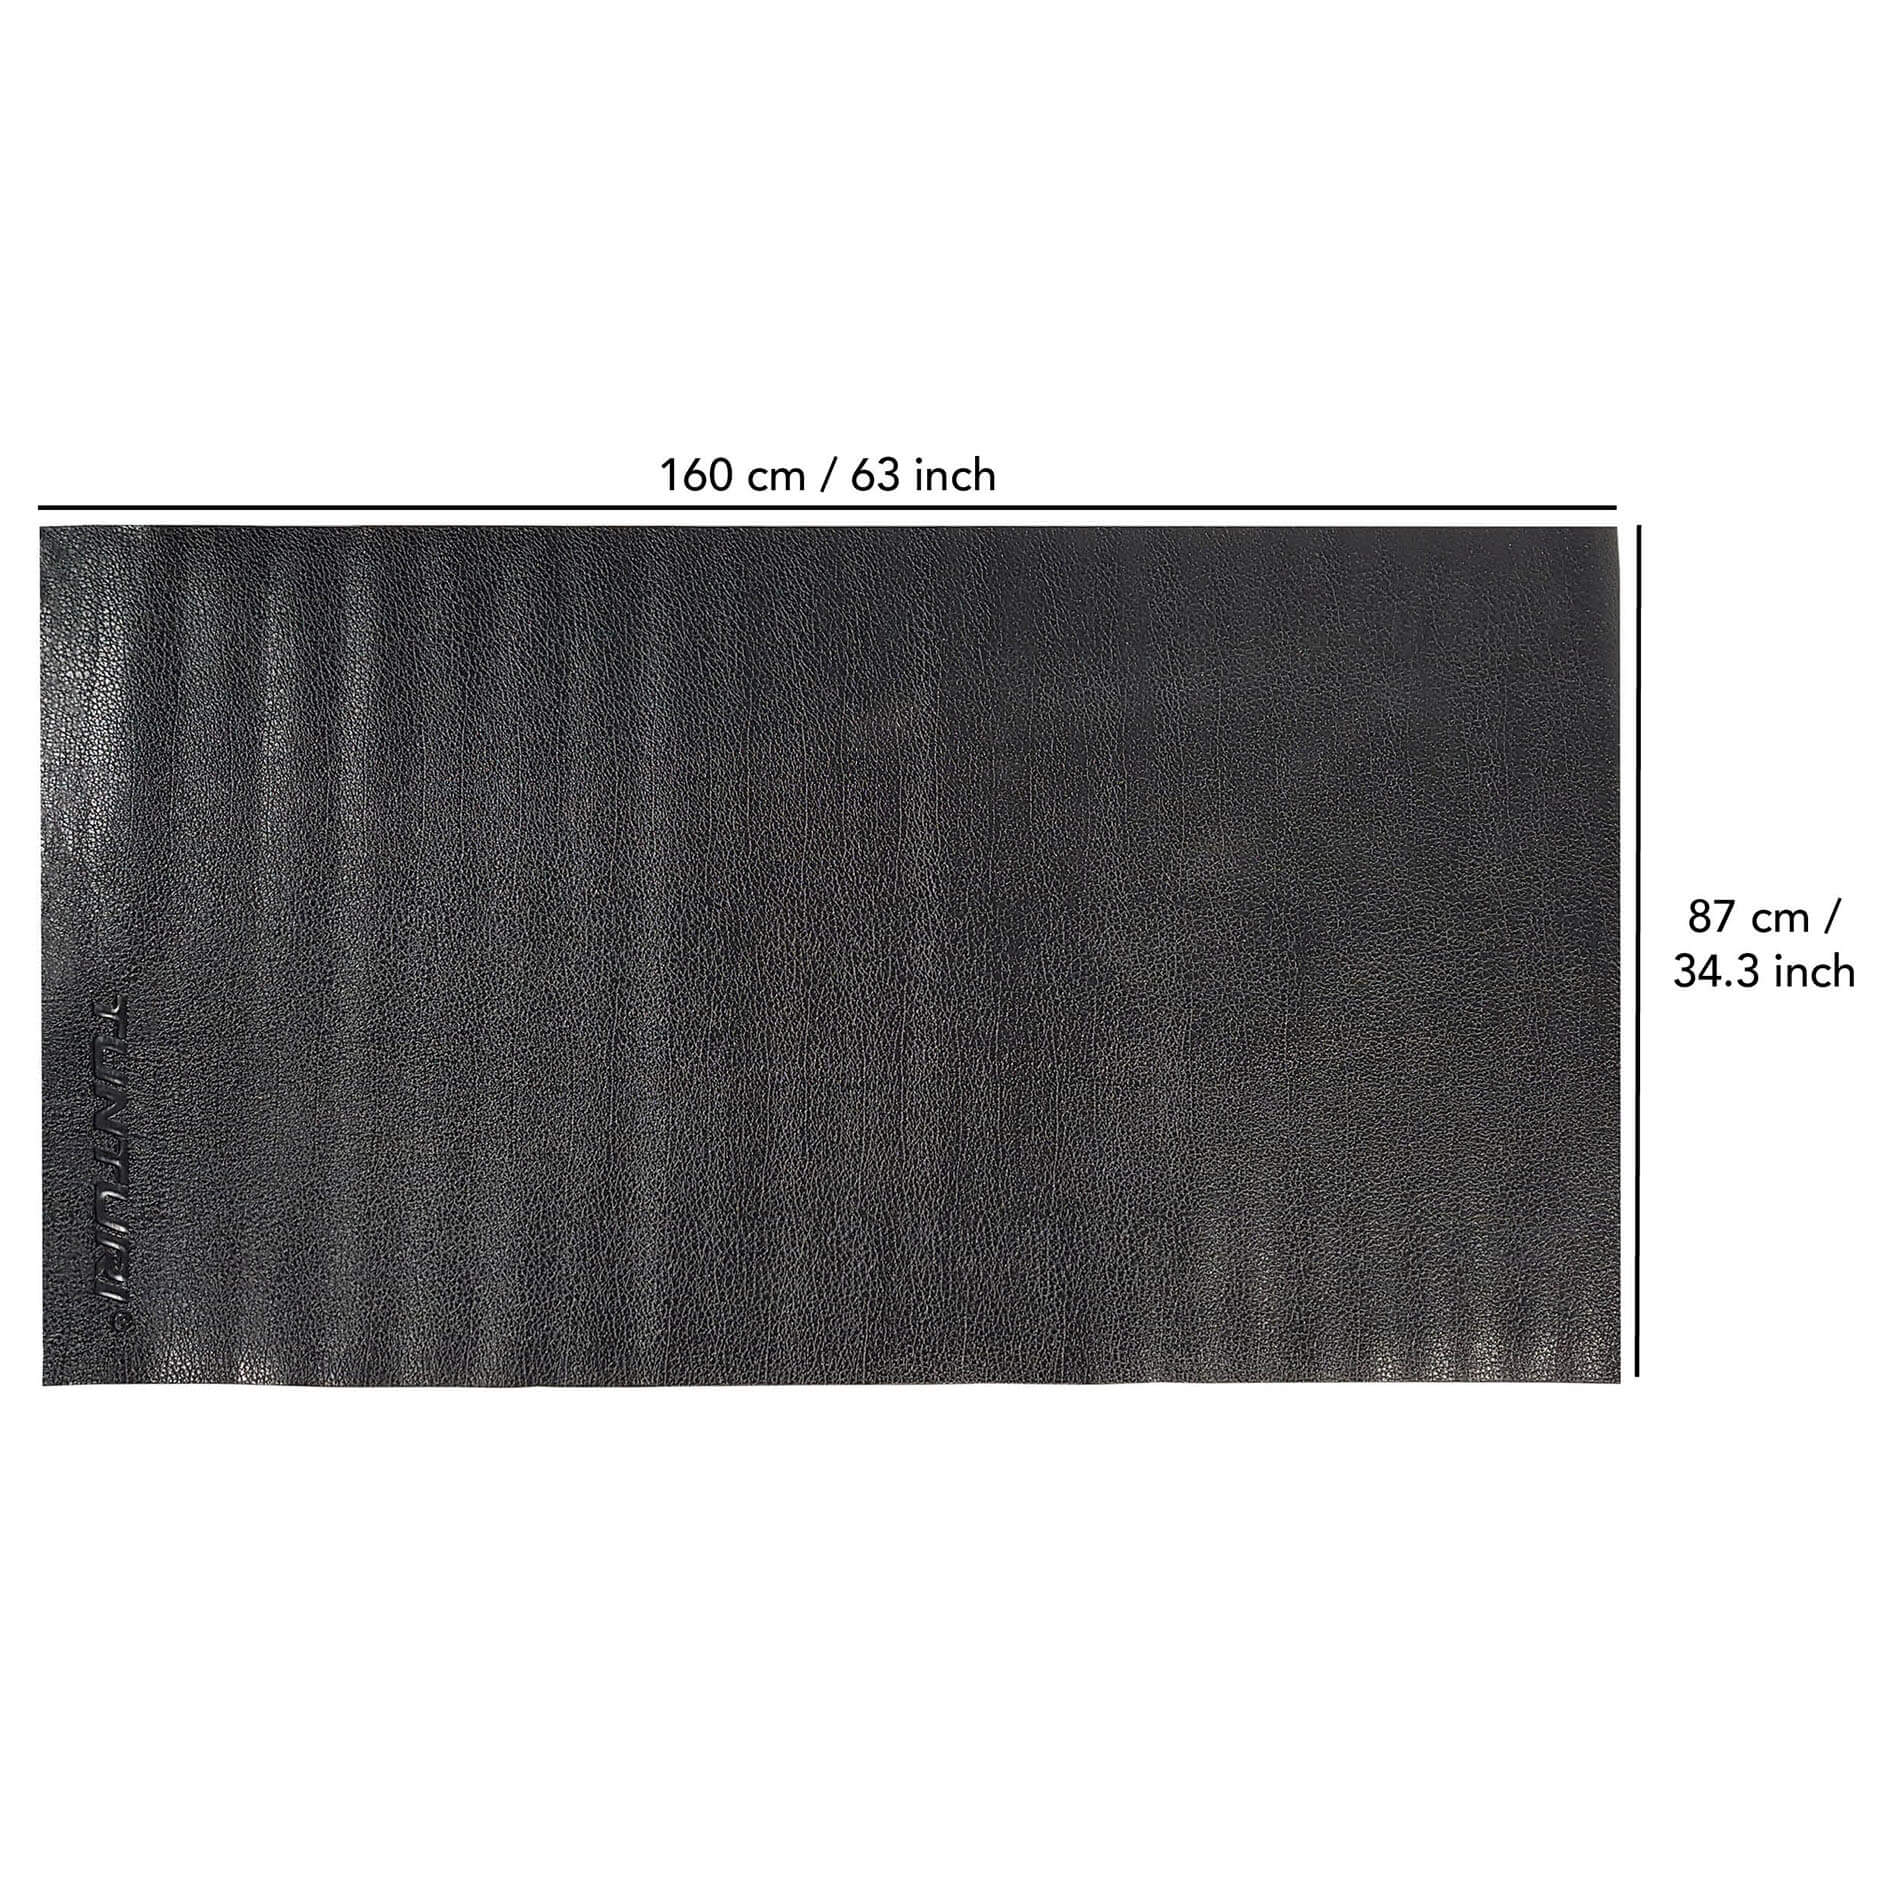 Crosstrainer mat - Vloerbeschermmat - 160 x 87 x 0,5 cm - Zwart